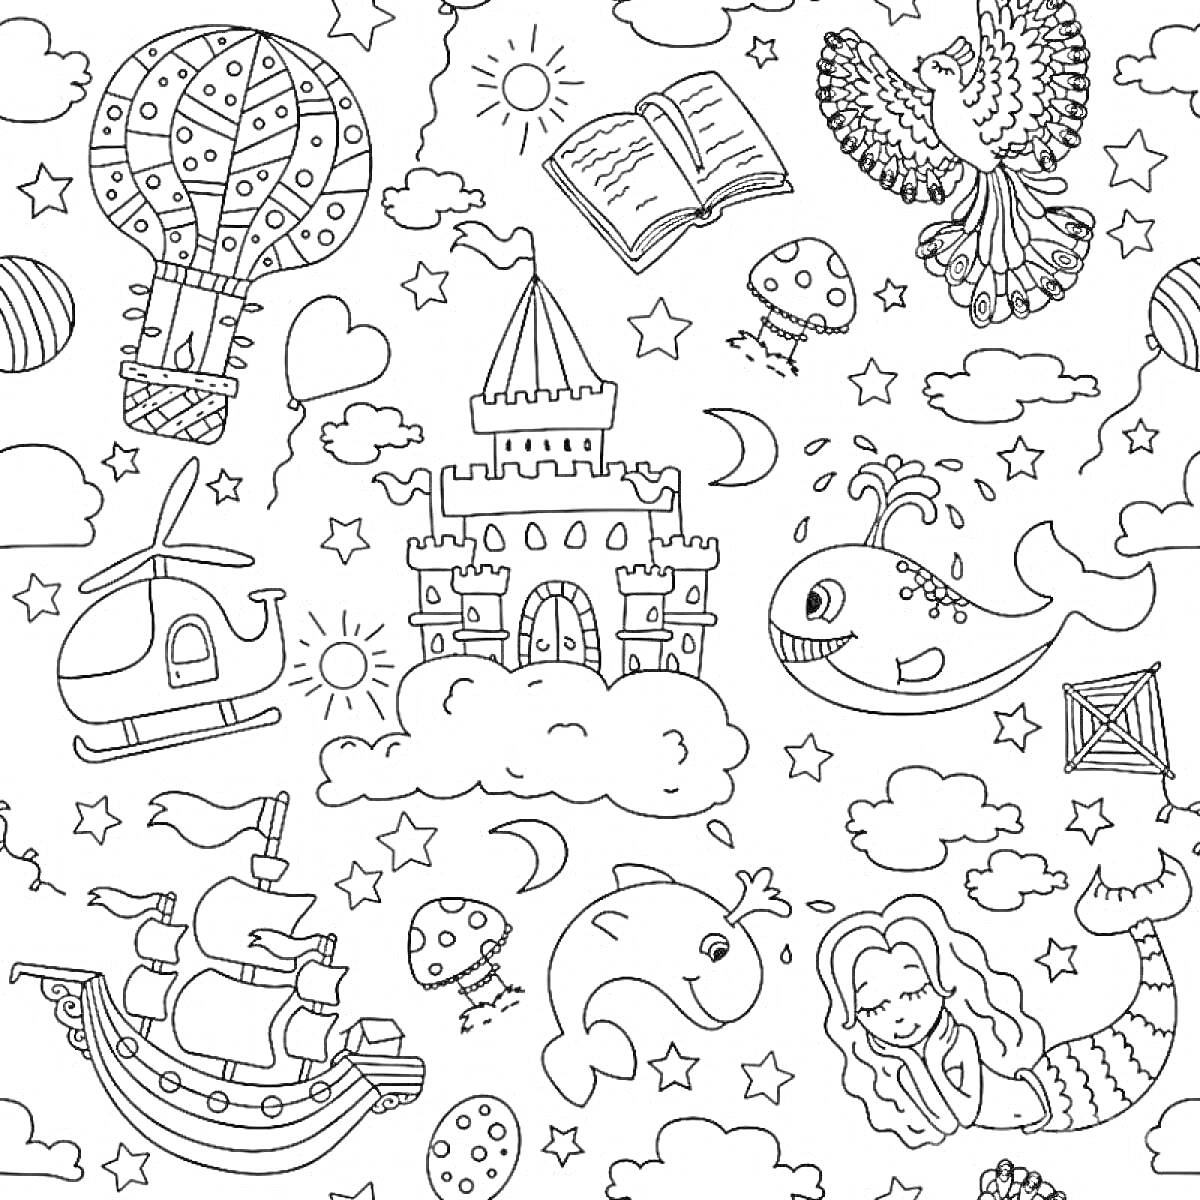 Раскраска Воздушный шар, вертолет, замок на облаке, книга, птица, кит, пиратский корабль, рыба, русалка, звезды, облака, луна, яйца, море